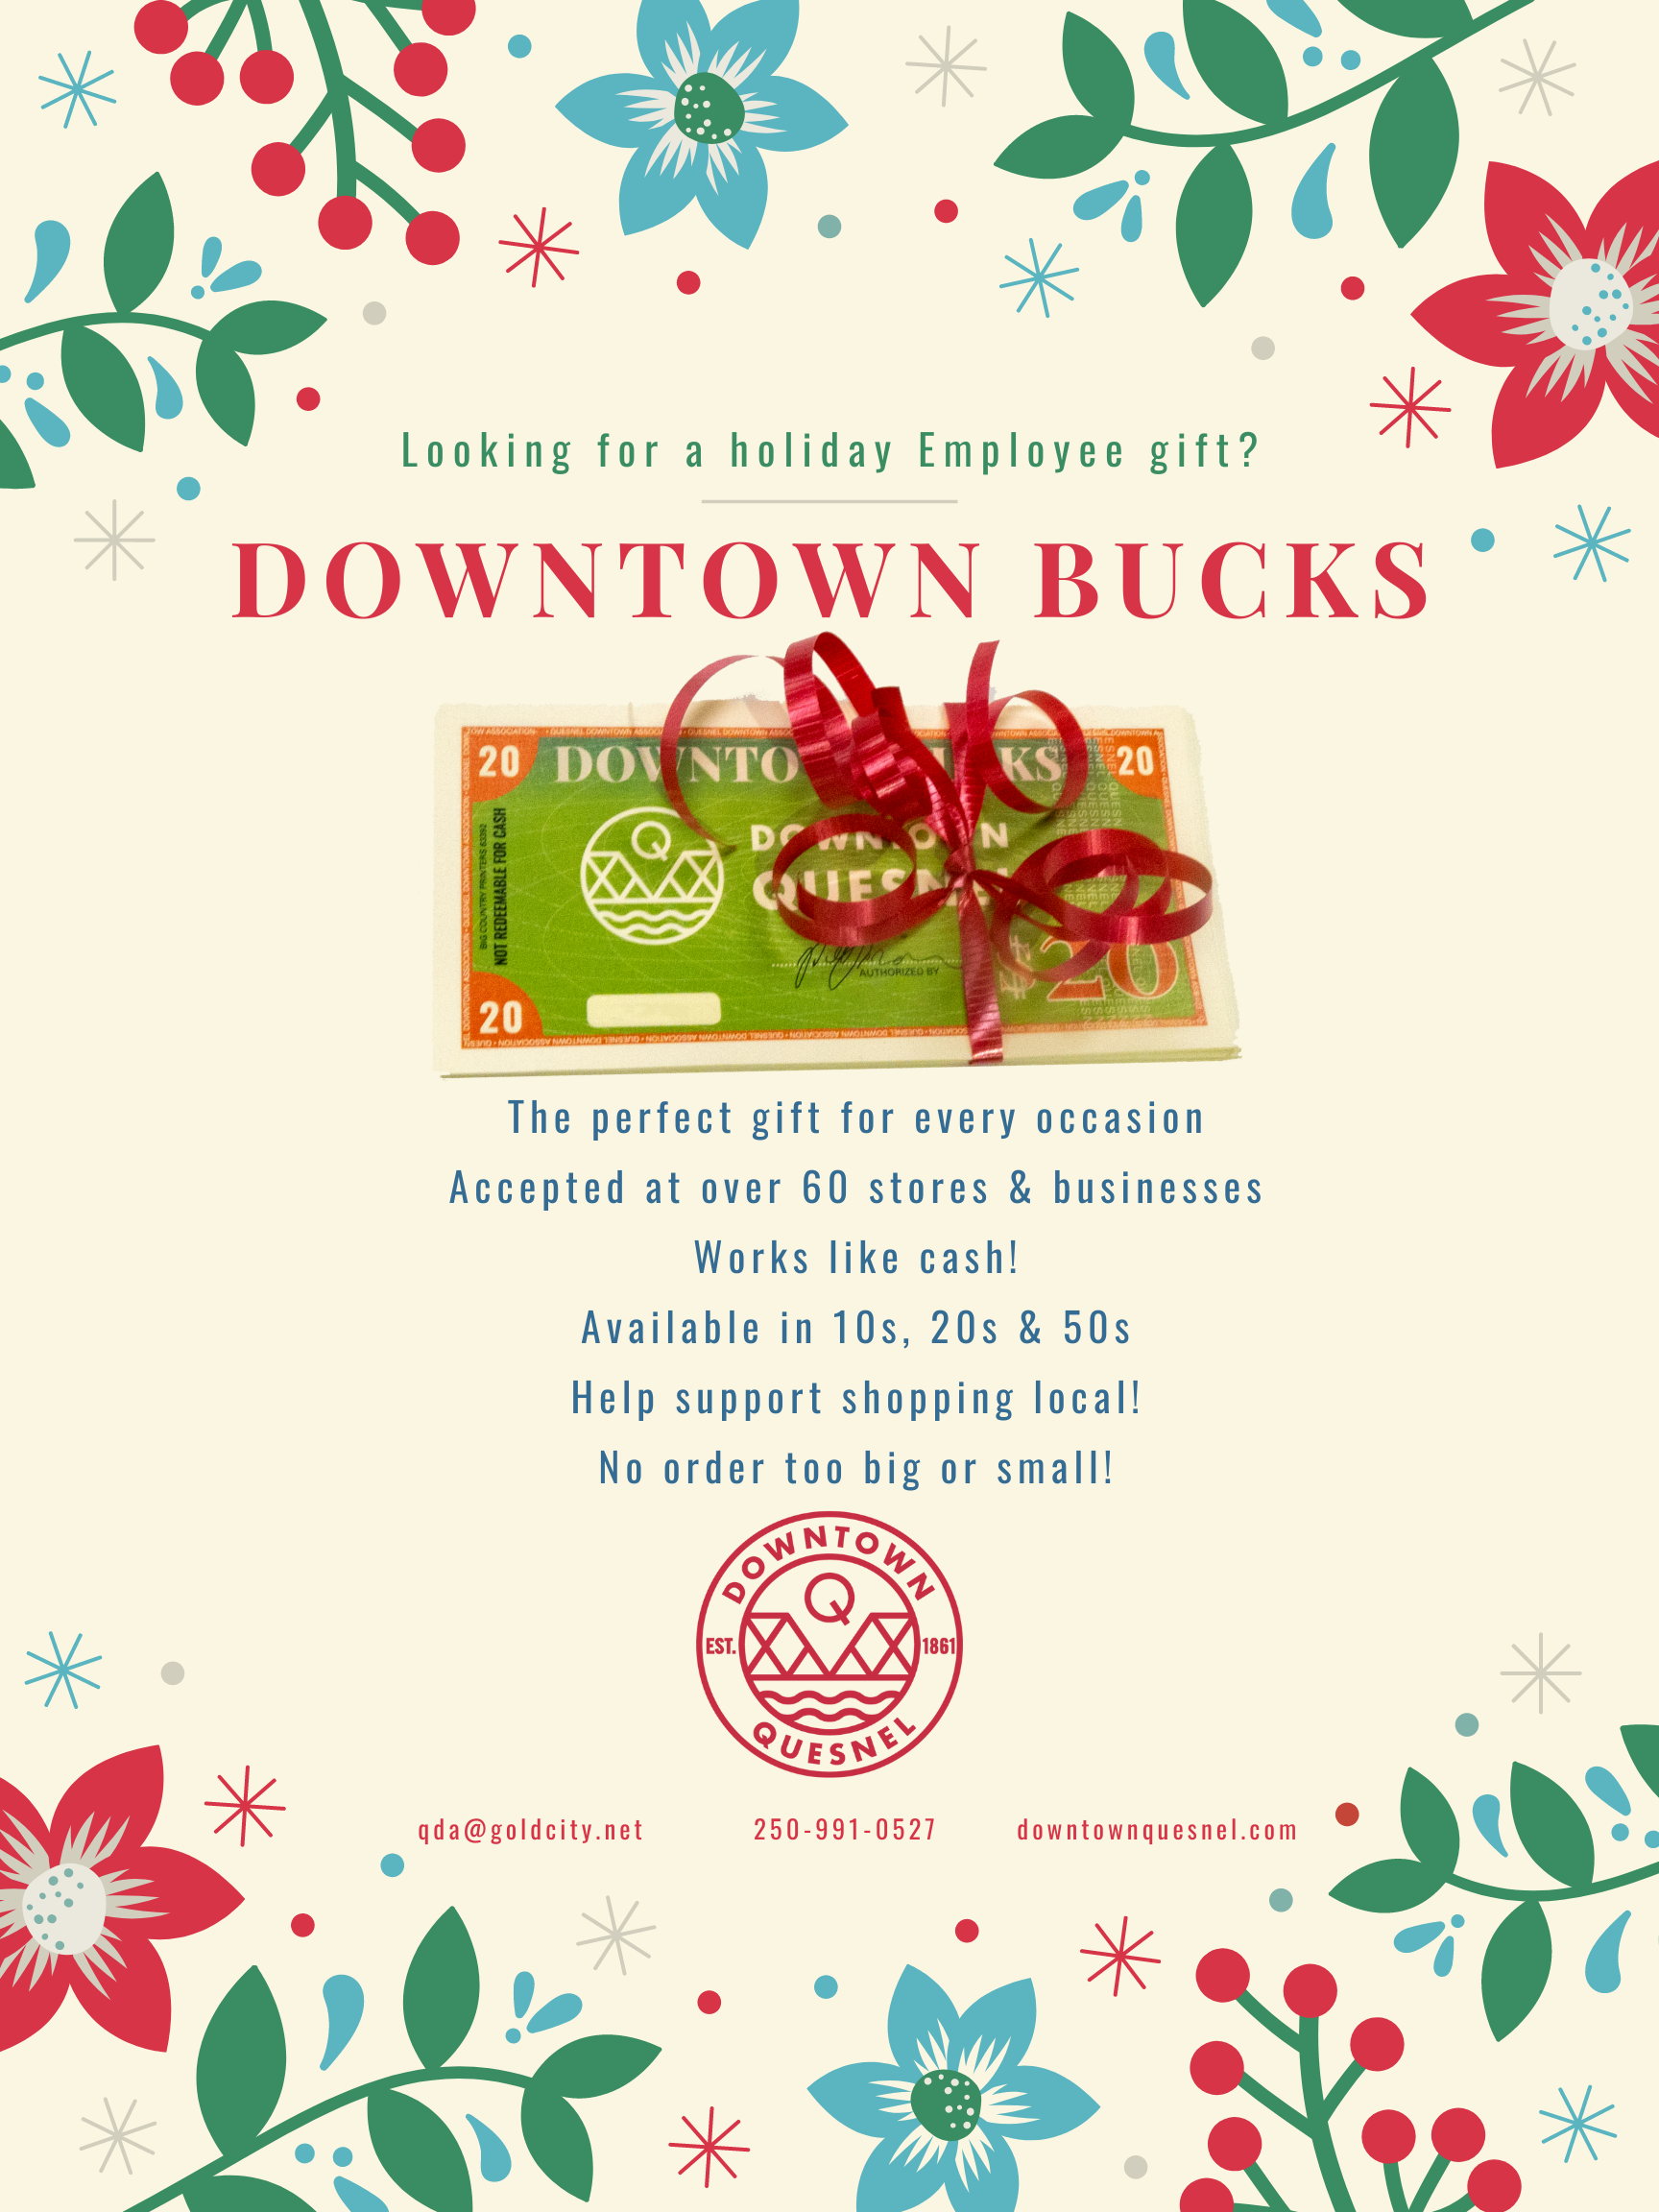 Downtown Bucks Christmas Gifts